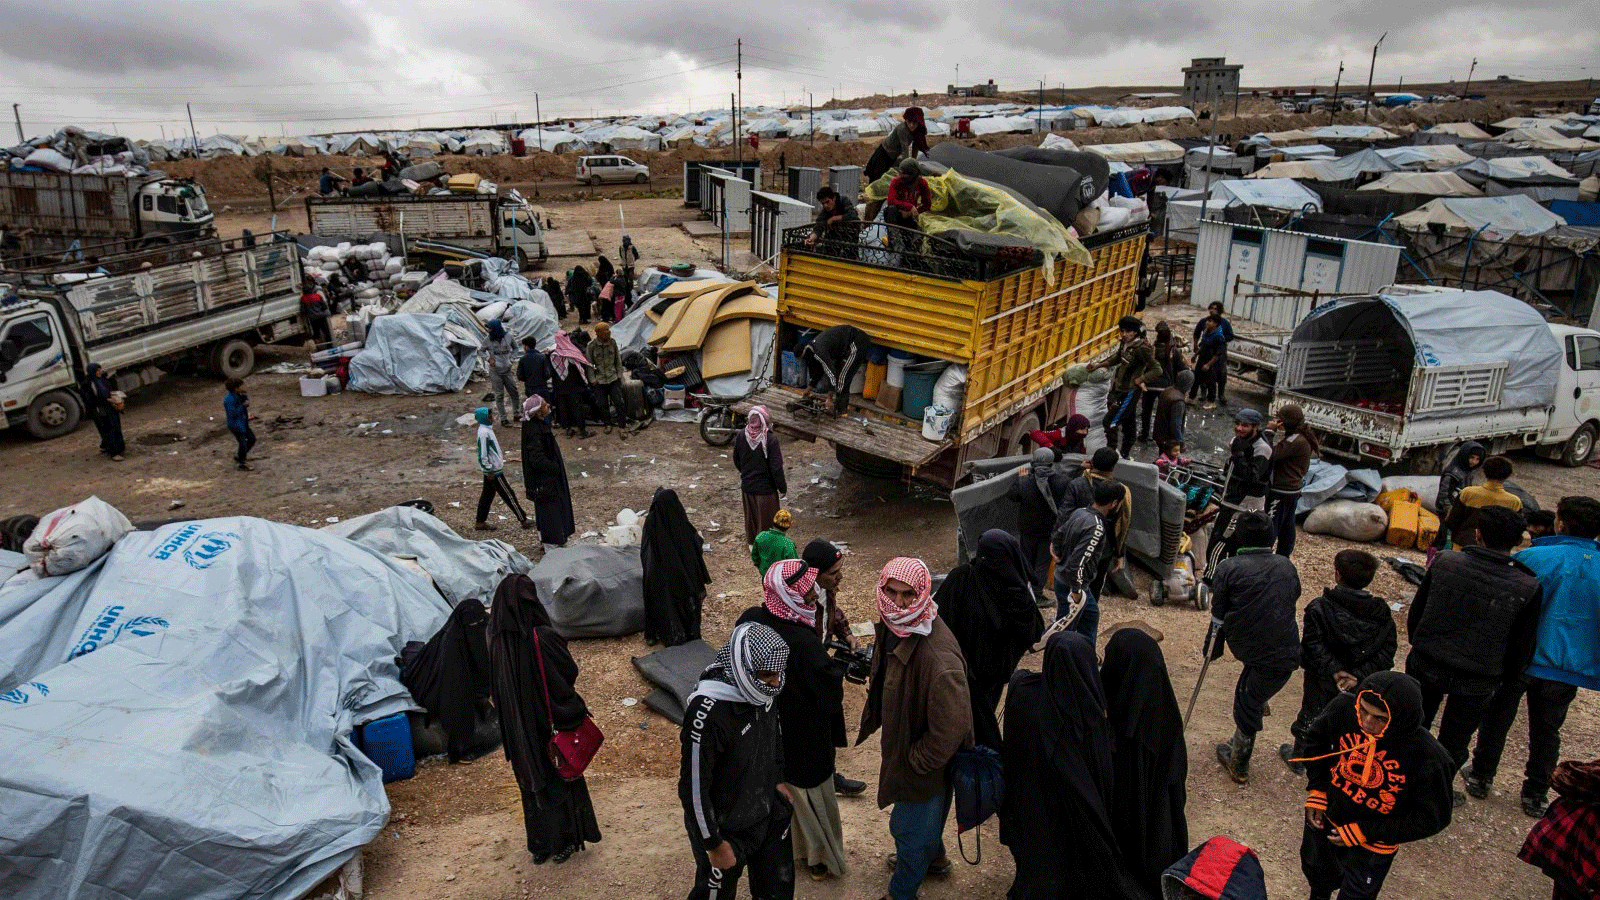 سوريون يقومون بتحميل متعلقاتهم في شاحنات أثناء استعدادهم لمغادرة مخيم الهول الذي تديره وحدات حماية الشعب، والذي يحتجز أقارب مقاتلين مزعومين من داعش، في محافظة الحسكة شمال شرق سوريا، 16 تشرين الثاني/ نوفمبر2020